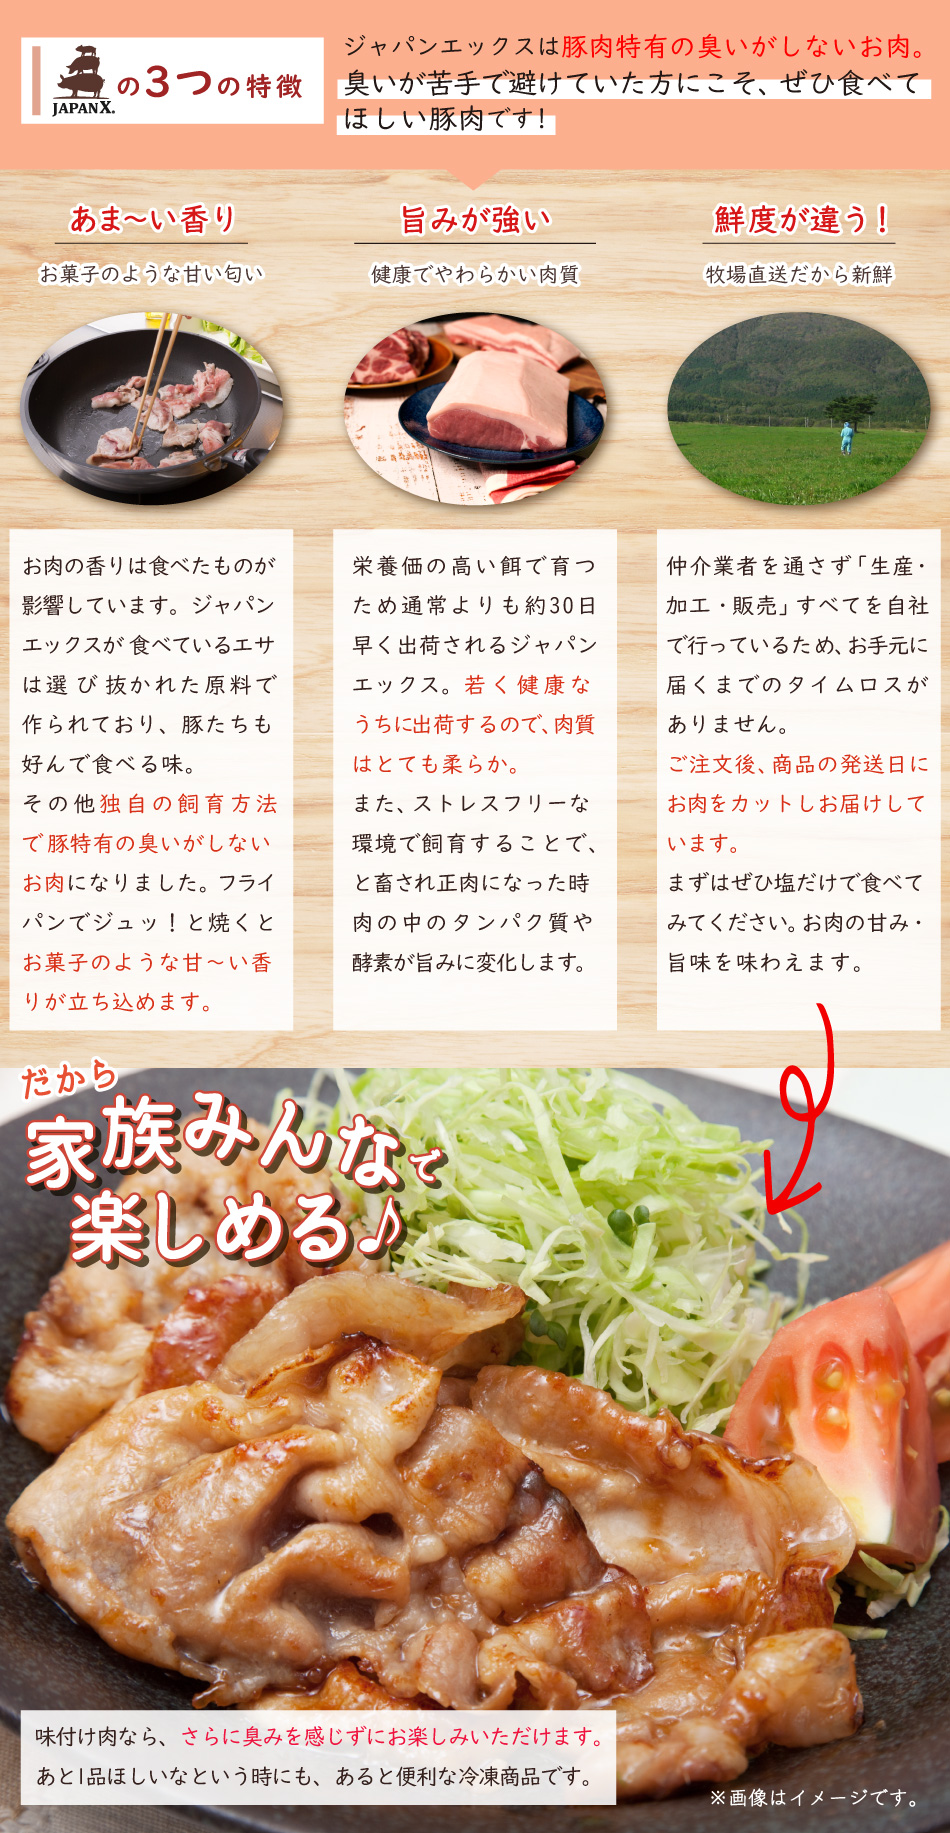 JAPAN X,豚肉特有の匂いがしないから、匂いが苦手で豚肉を避けていた方にこそ食べてほしいです！,甘い香り,旨味が強い,鮮度が違う！,だから家族みんなで楽しめる！味付け肉ならさらに臭みを感じずにお楽しみいただけます